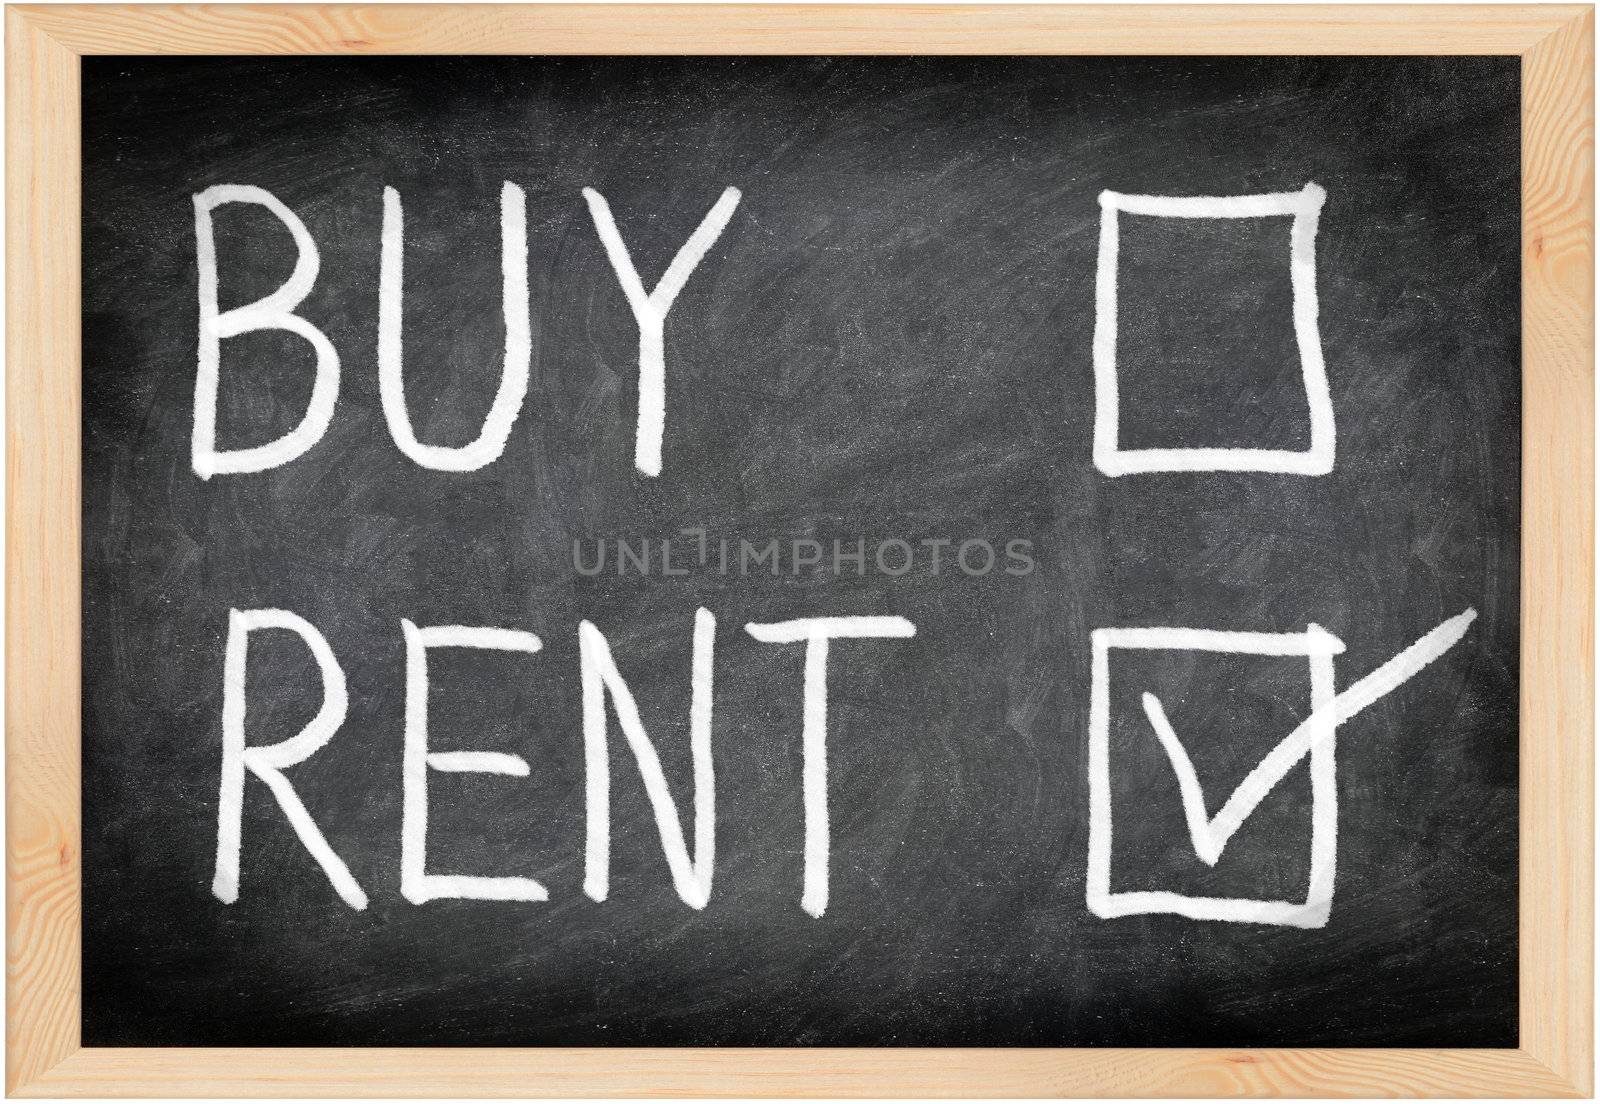 Rent not buy blackboard concept. Choosing renting over buying.